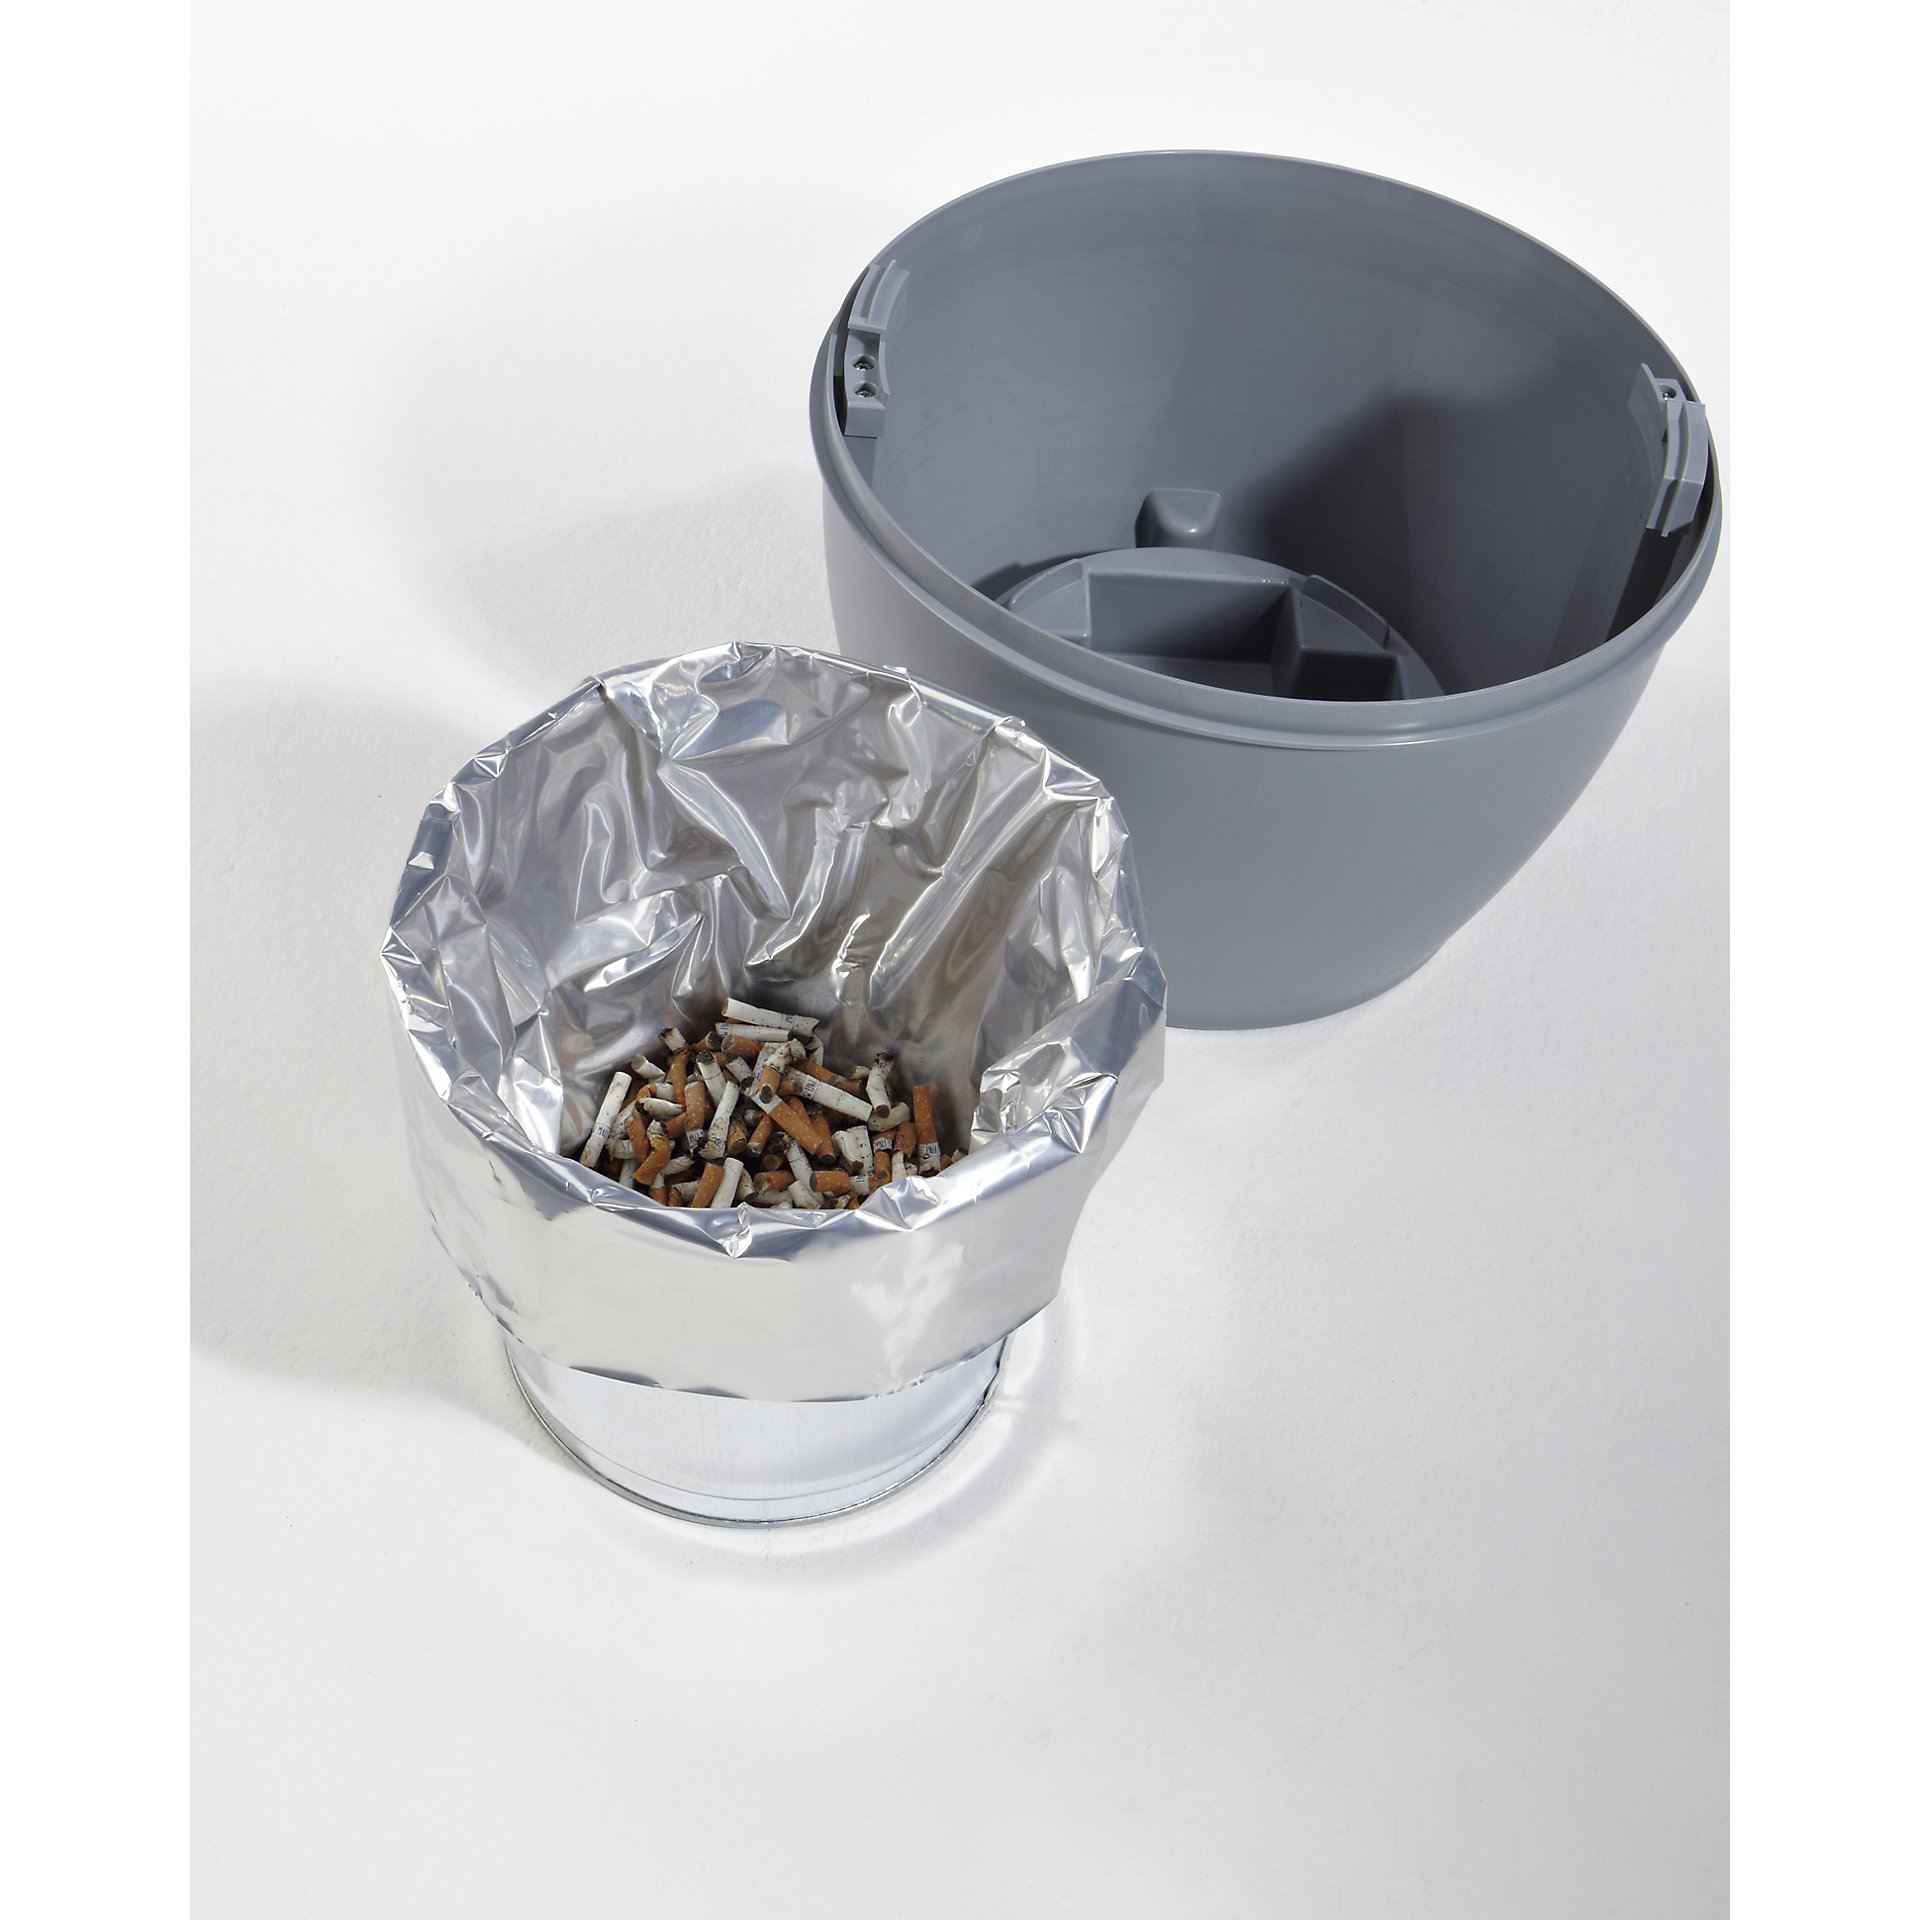 Justrite Sicherheits-Standascher aus Kunststoff Elite Smoker Cease Fire® | 15 Liter Innenbehälter, selbstlöschend | HxB 97x31cm | Schwarz